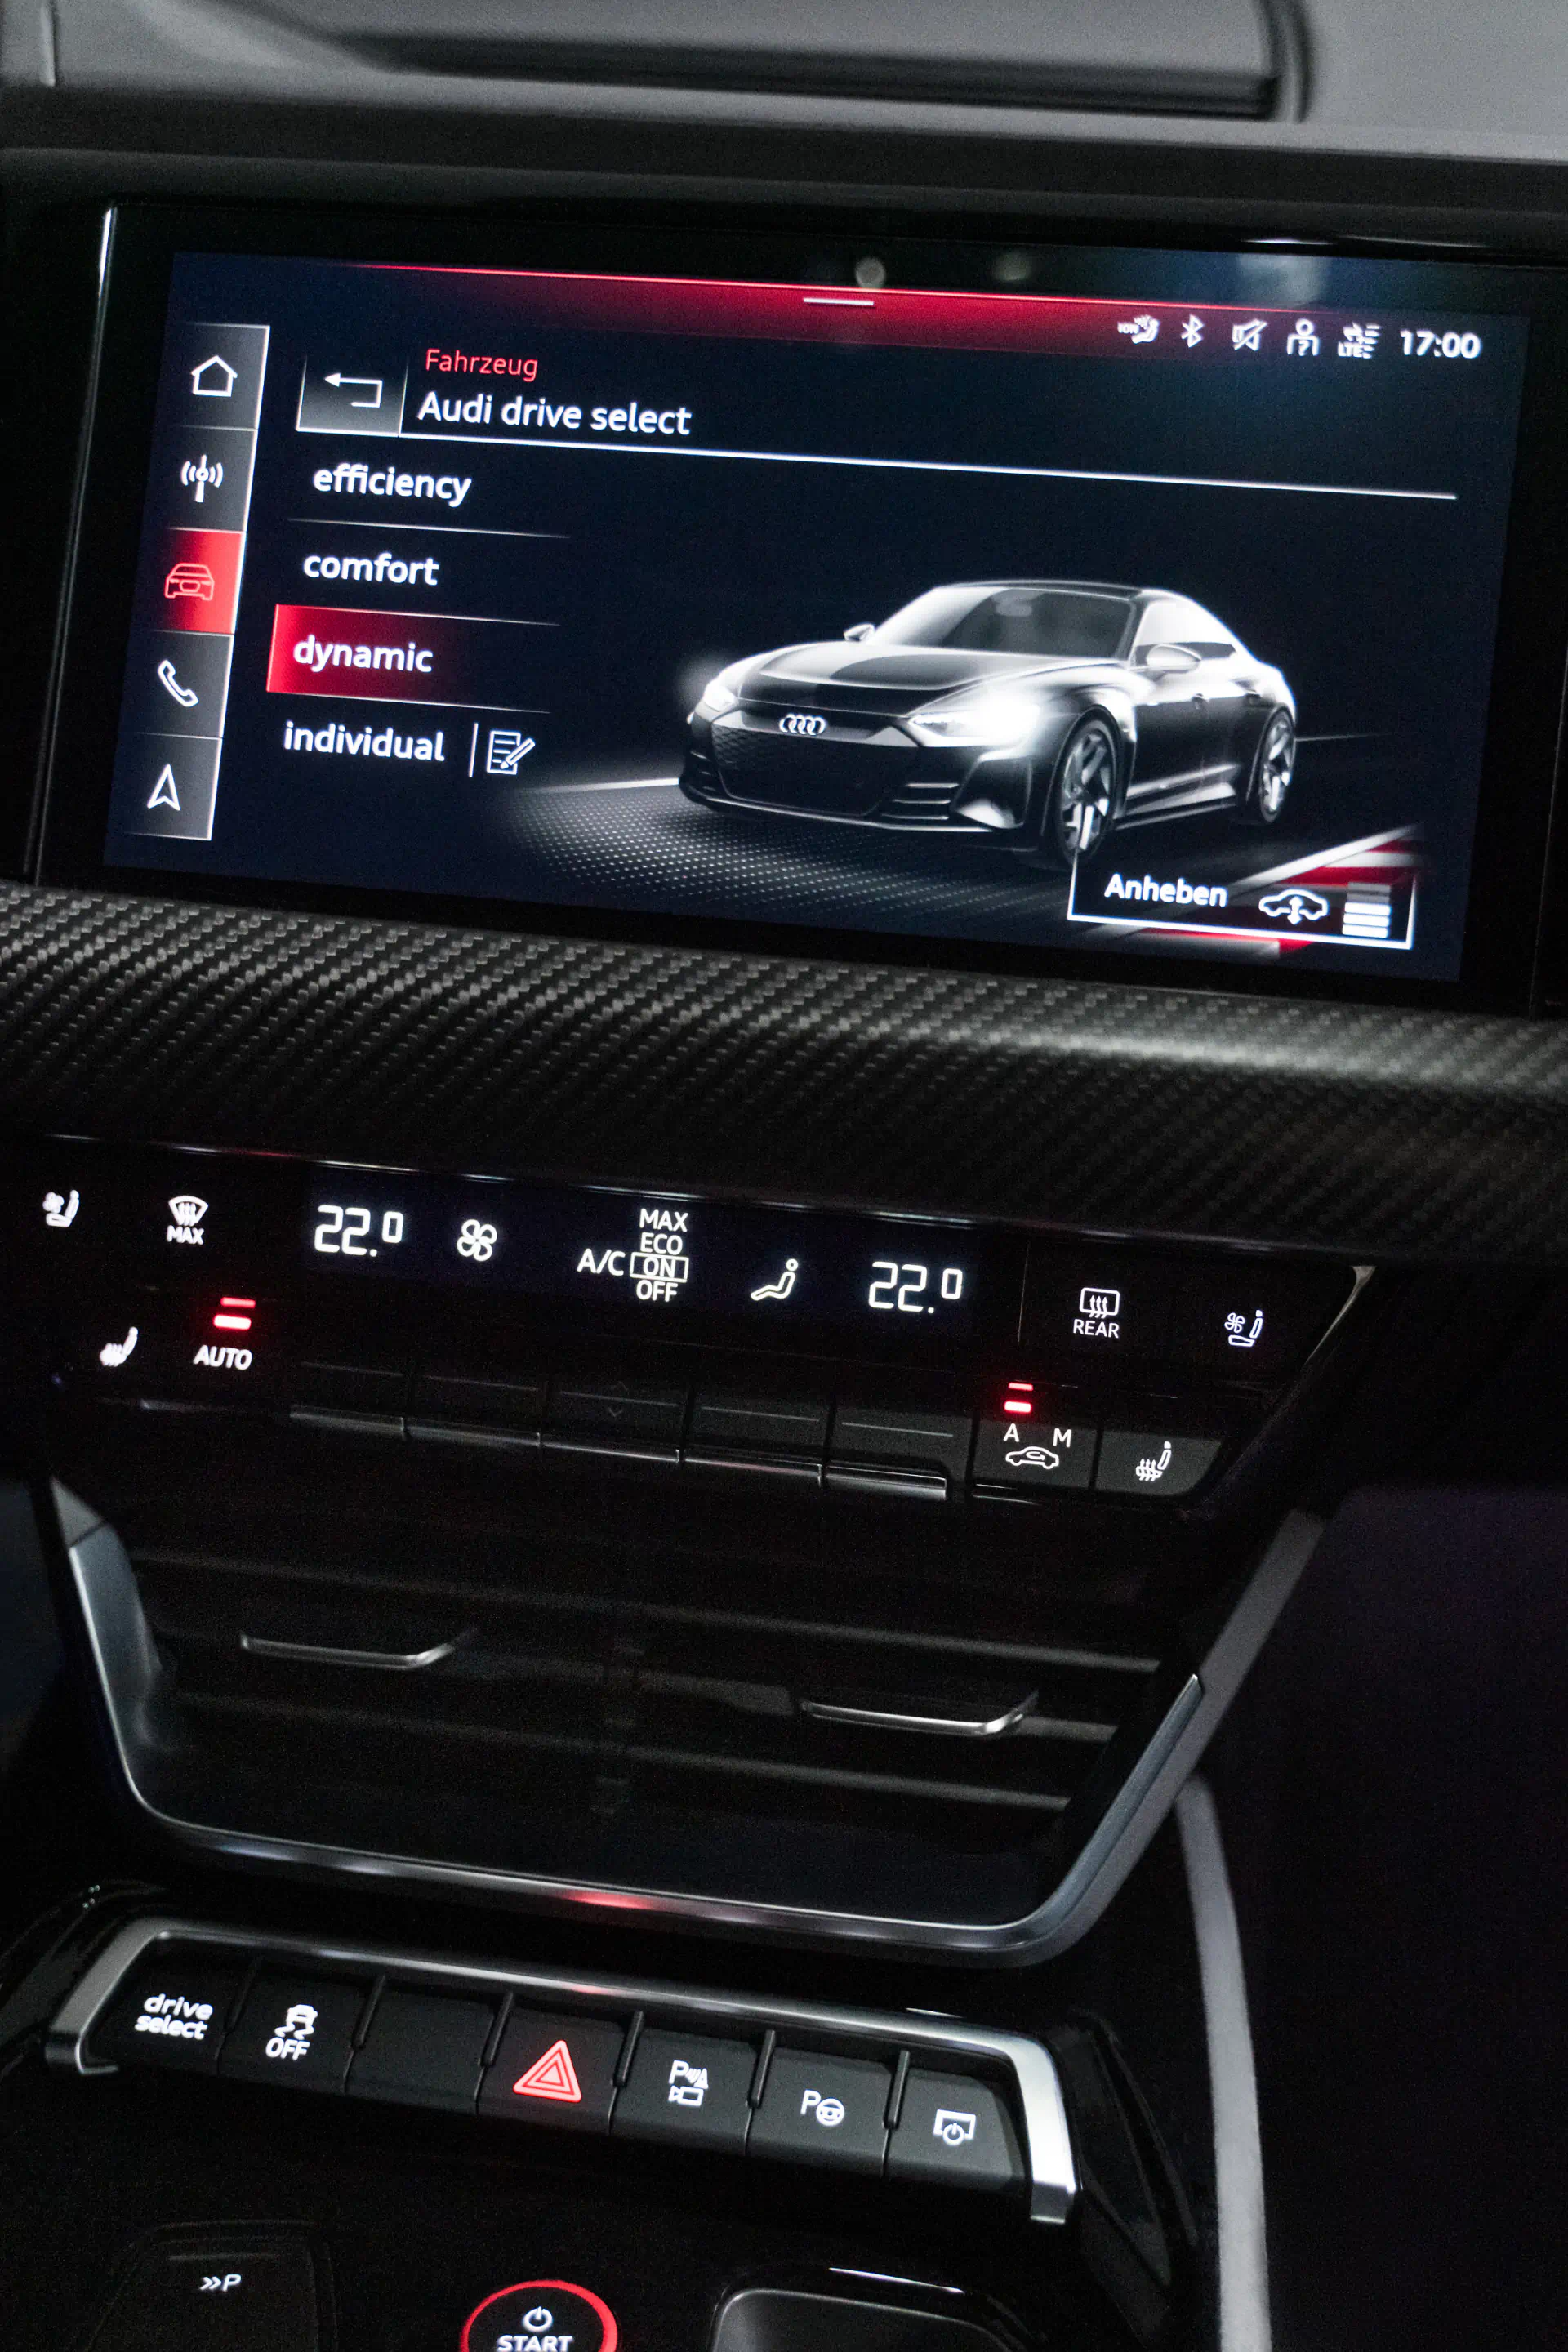 Het MMI-keuzemenu voor Audi drive select.